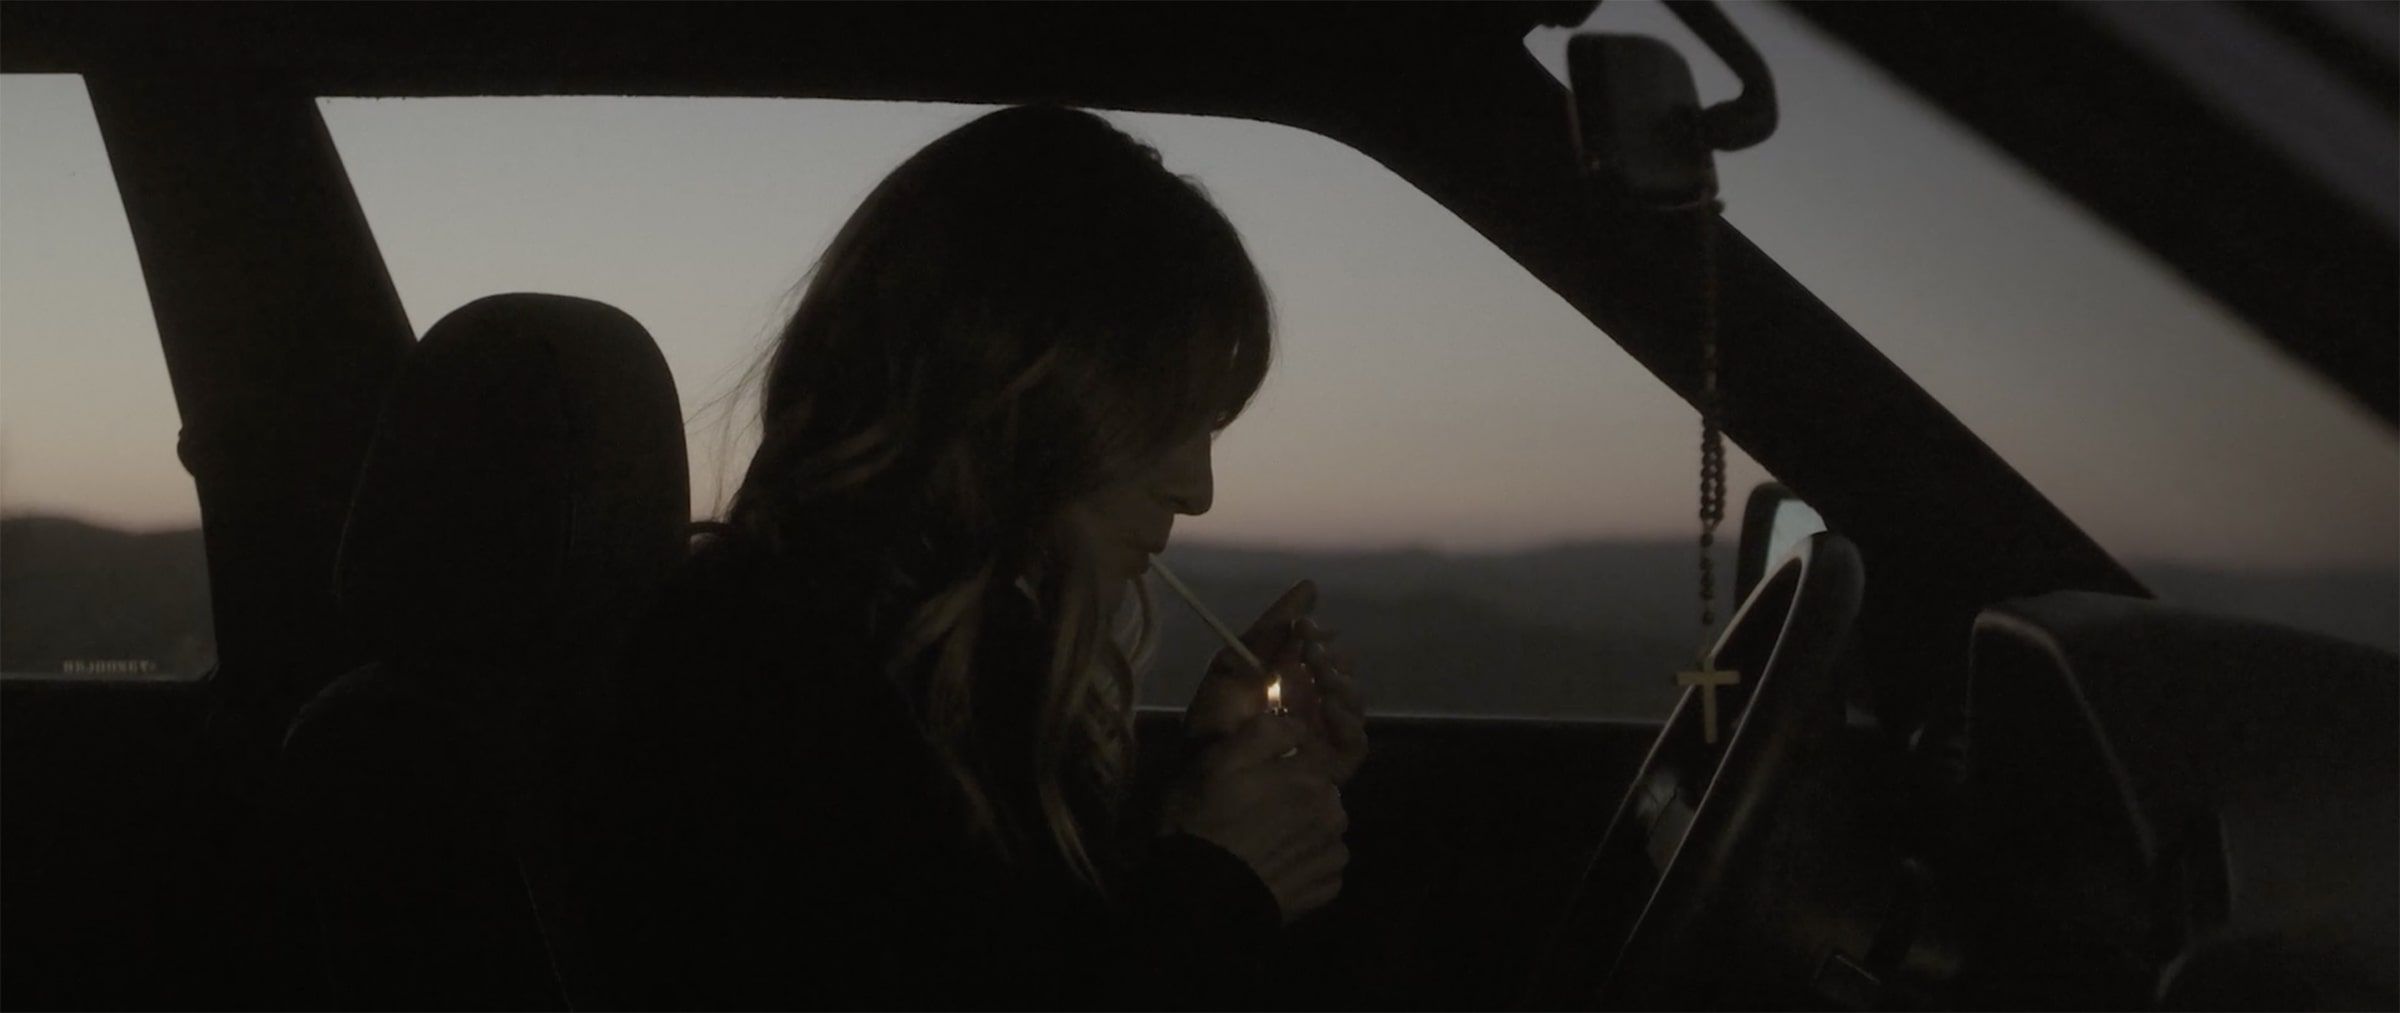 capture d'un plan de film, une femme allume une cigarette au volant d'une voiture